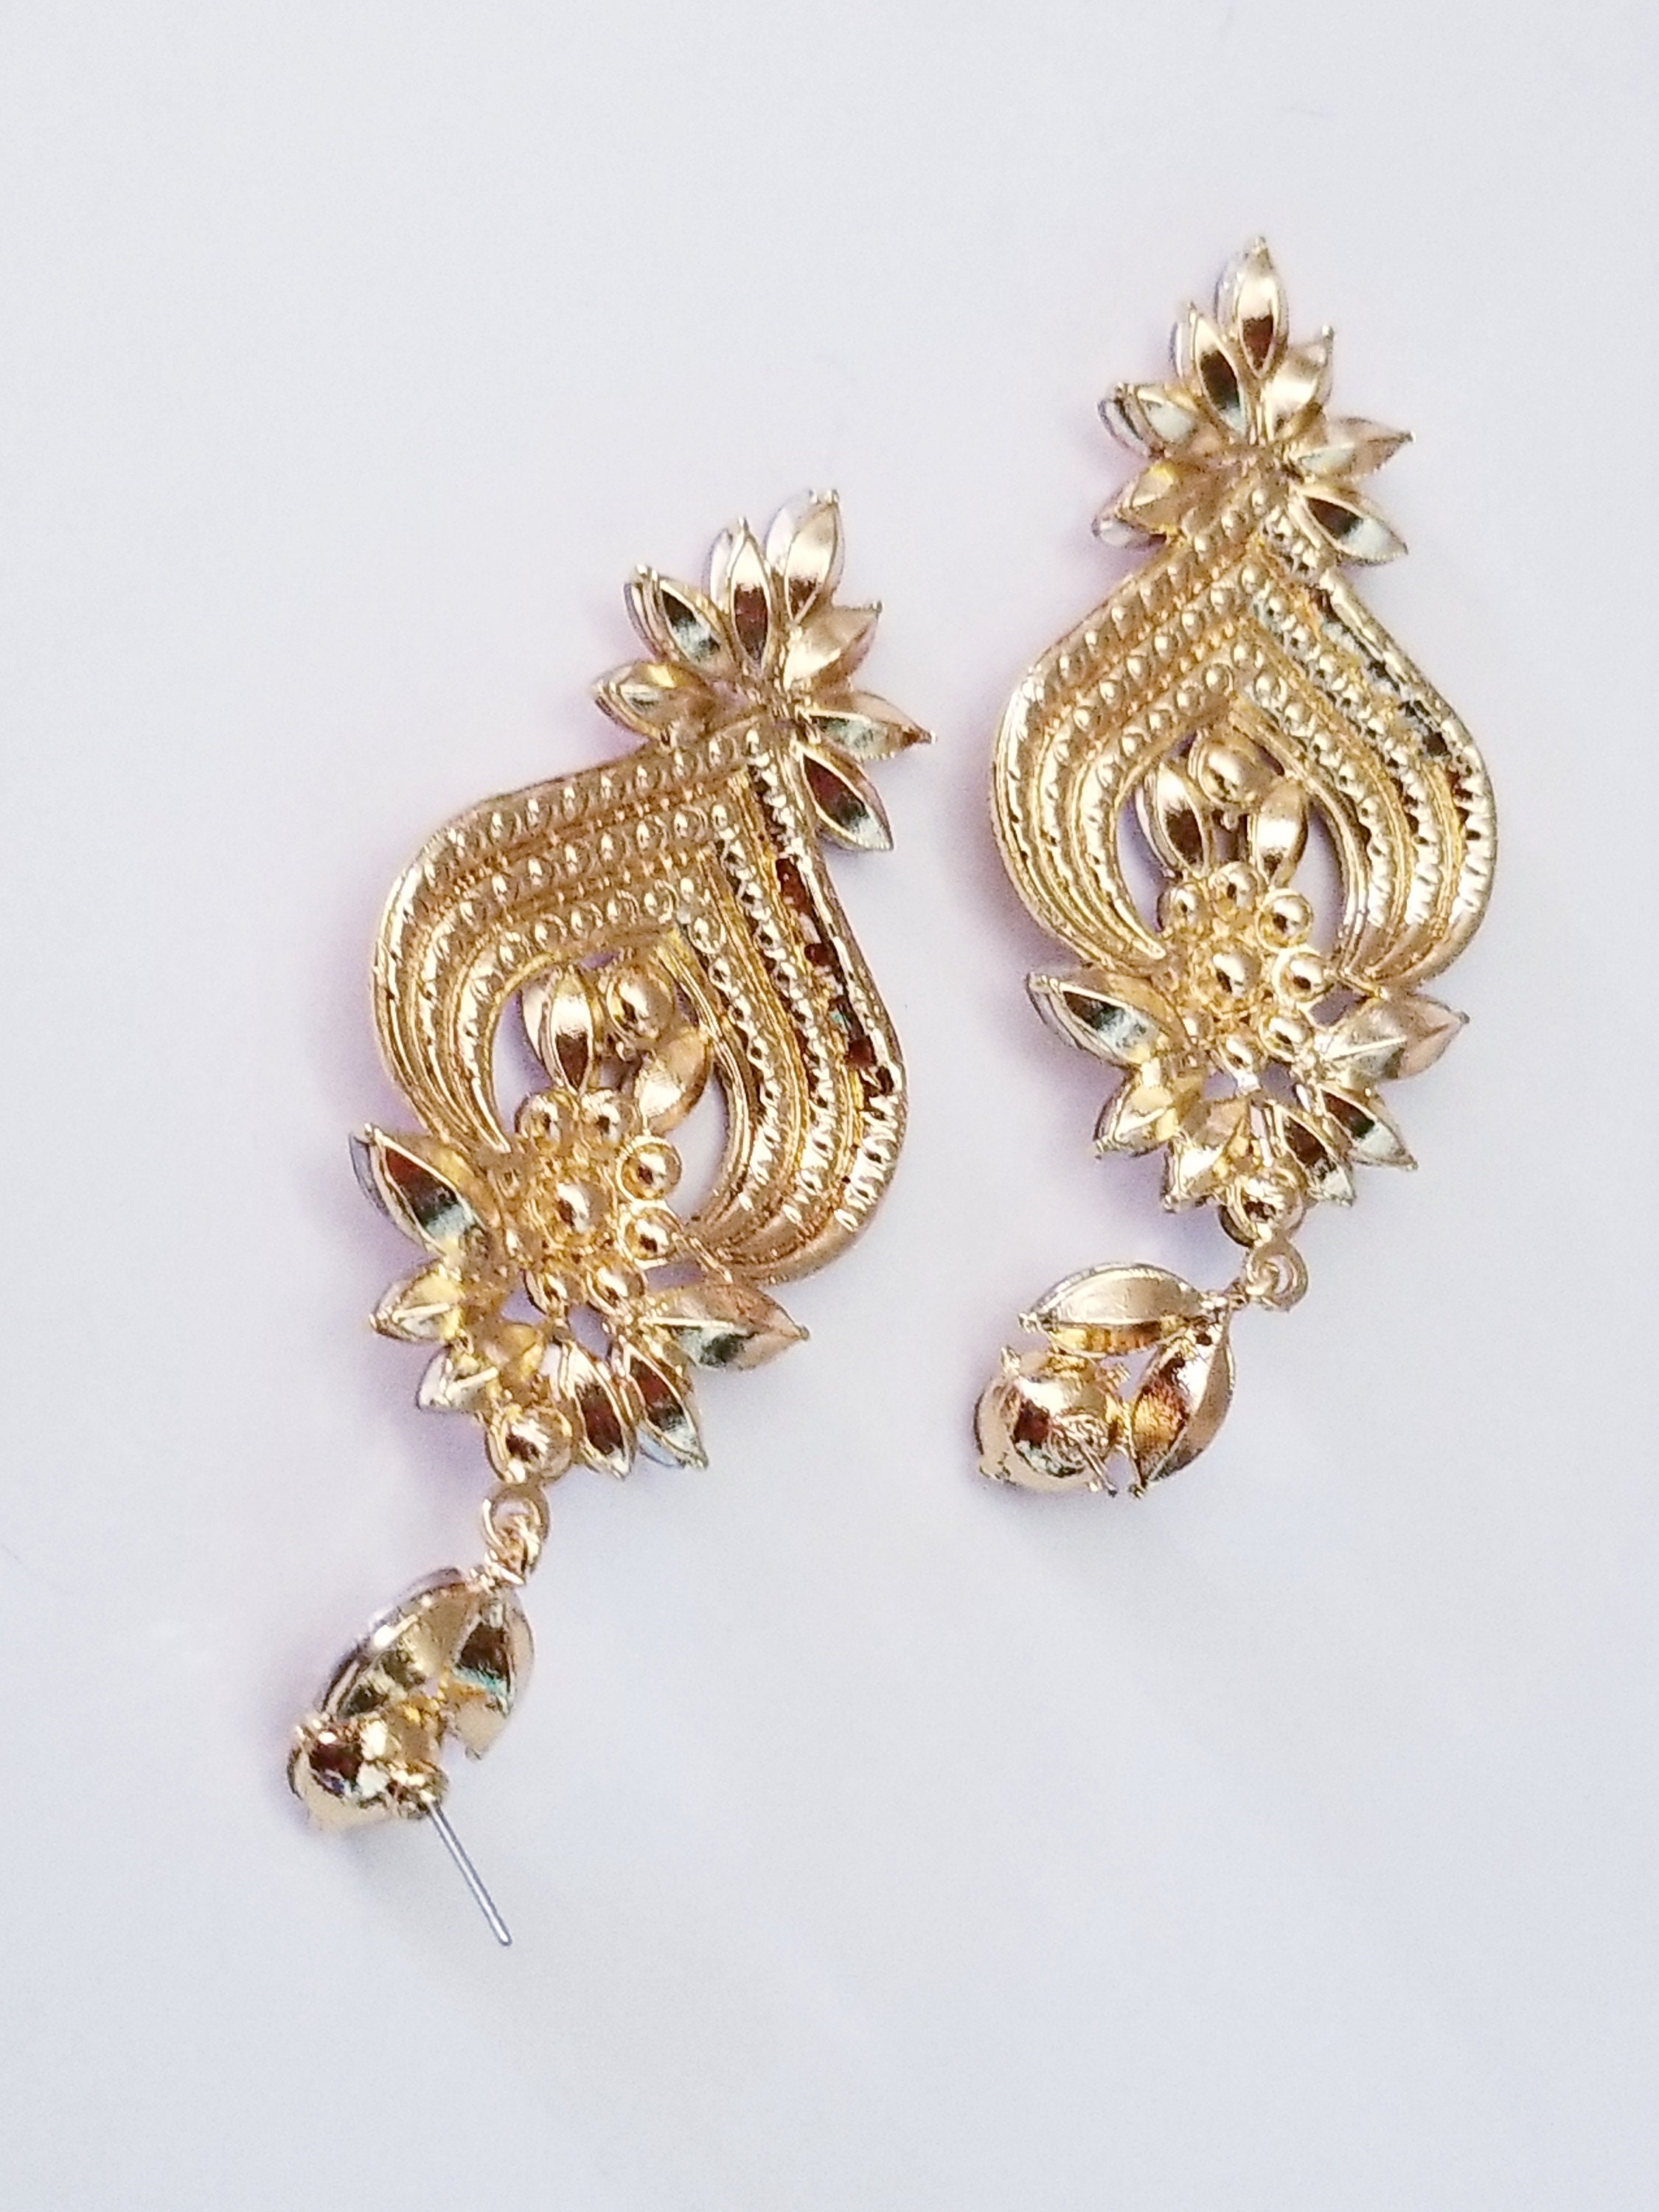 Crystal Chandelier Earrings Rhinestone Drop Earrings Topaz | Etsy